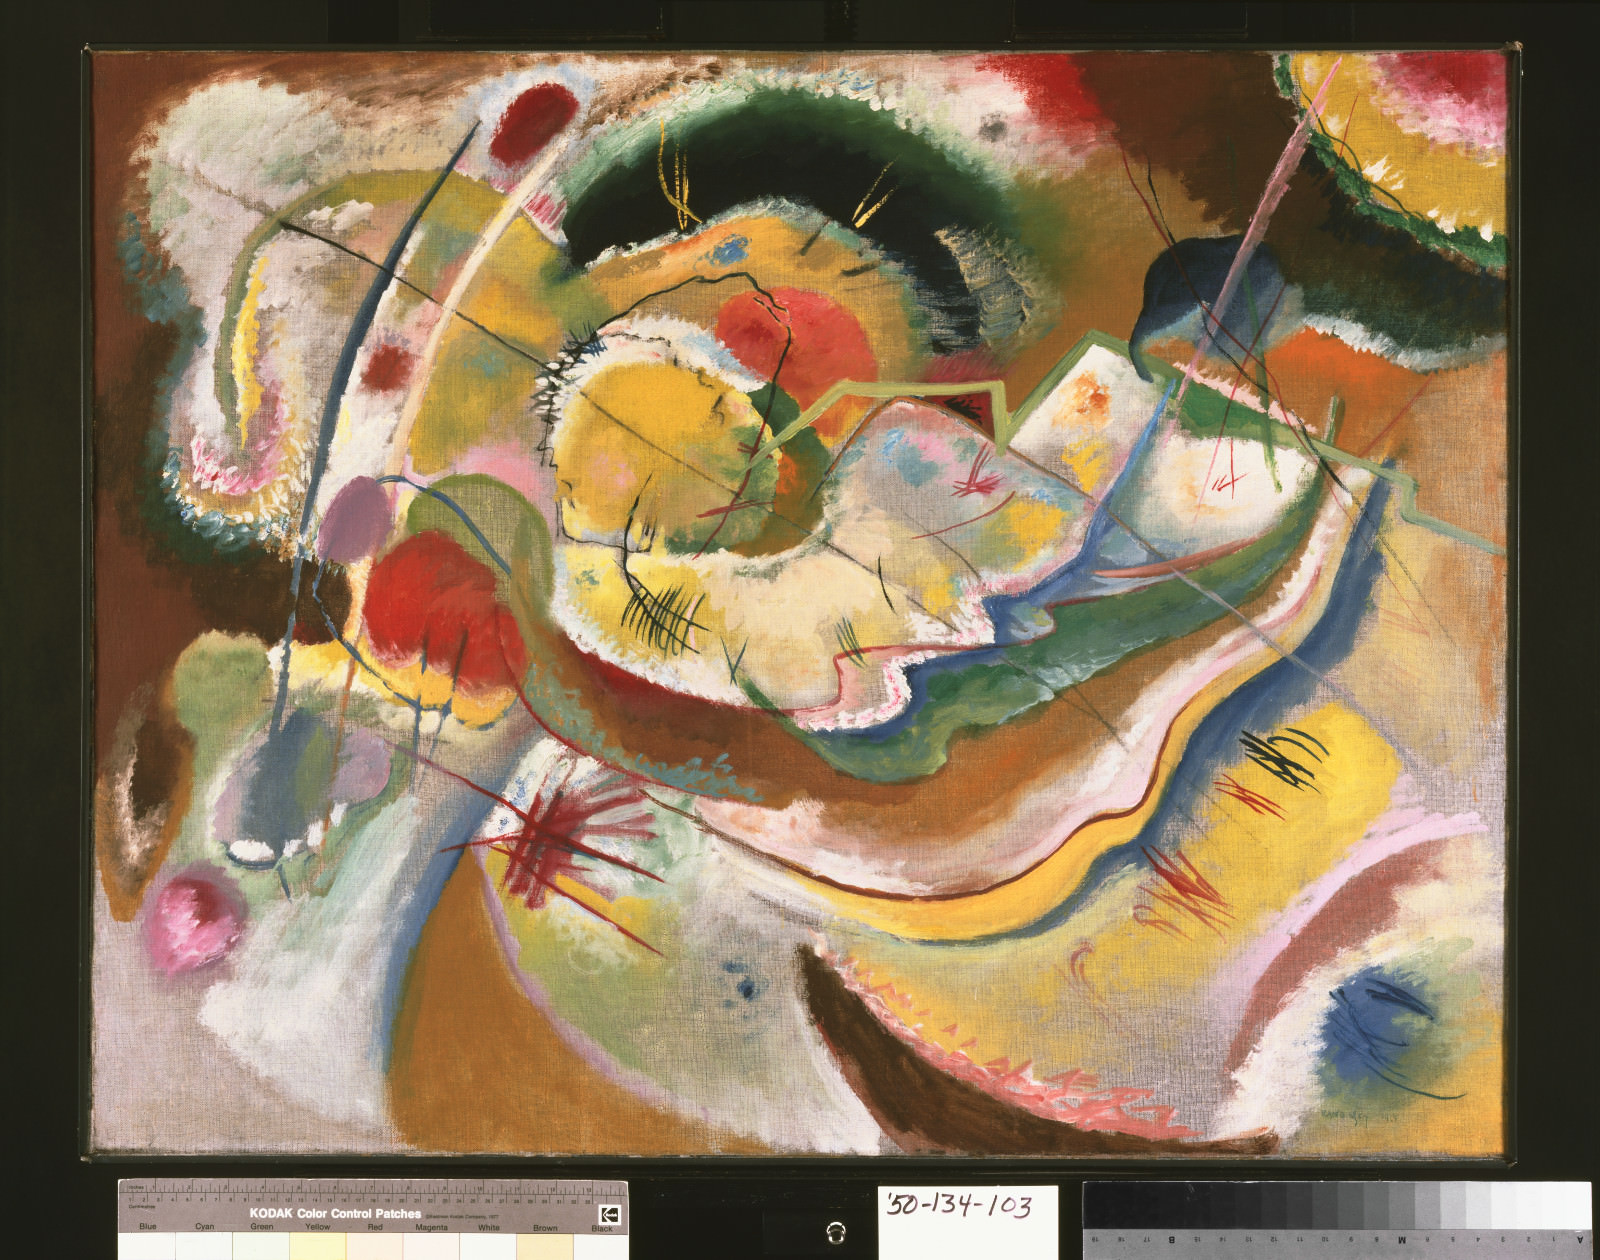 Fig. 4 - Vasily Kandinsky, Pequeña pintura con amarillo (improvisación), 1914, óleo sobre lienzo, 31 x 39 5/8 polegadas (78.7 x 100.6 cm) enmarcado: 32 3/4 x 41 1/2 x 2 1/2 ppulgadas(83.2 x 105.4 x x.4 ccm. Philadelphia Museum of Art, El Louise y Walter Arensberg Colección, 1950-134-103.